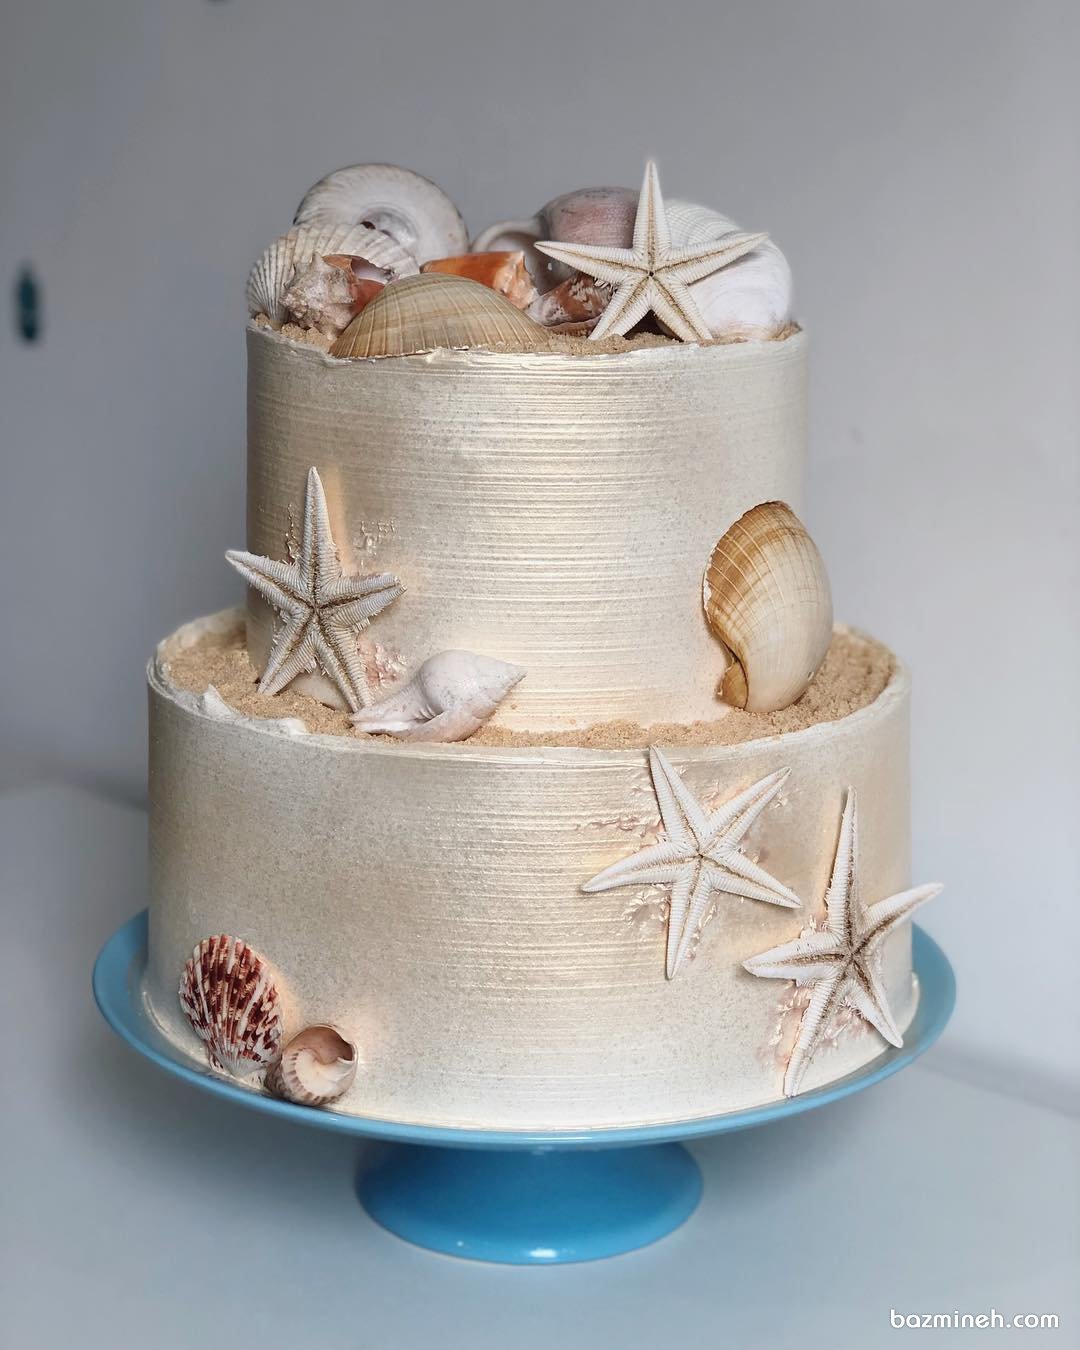 کیک دو طبقه جشن تولد بزرگسال با تم صدف و ستاره دریایی